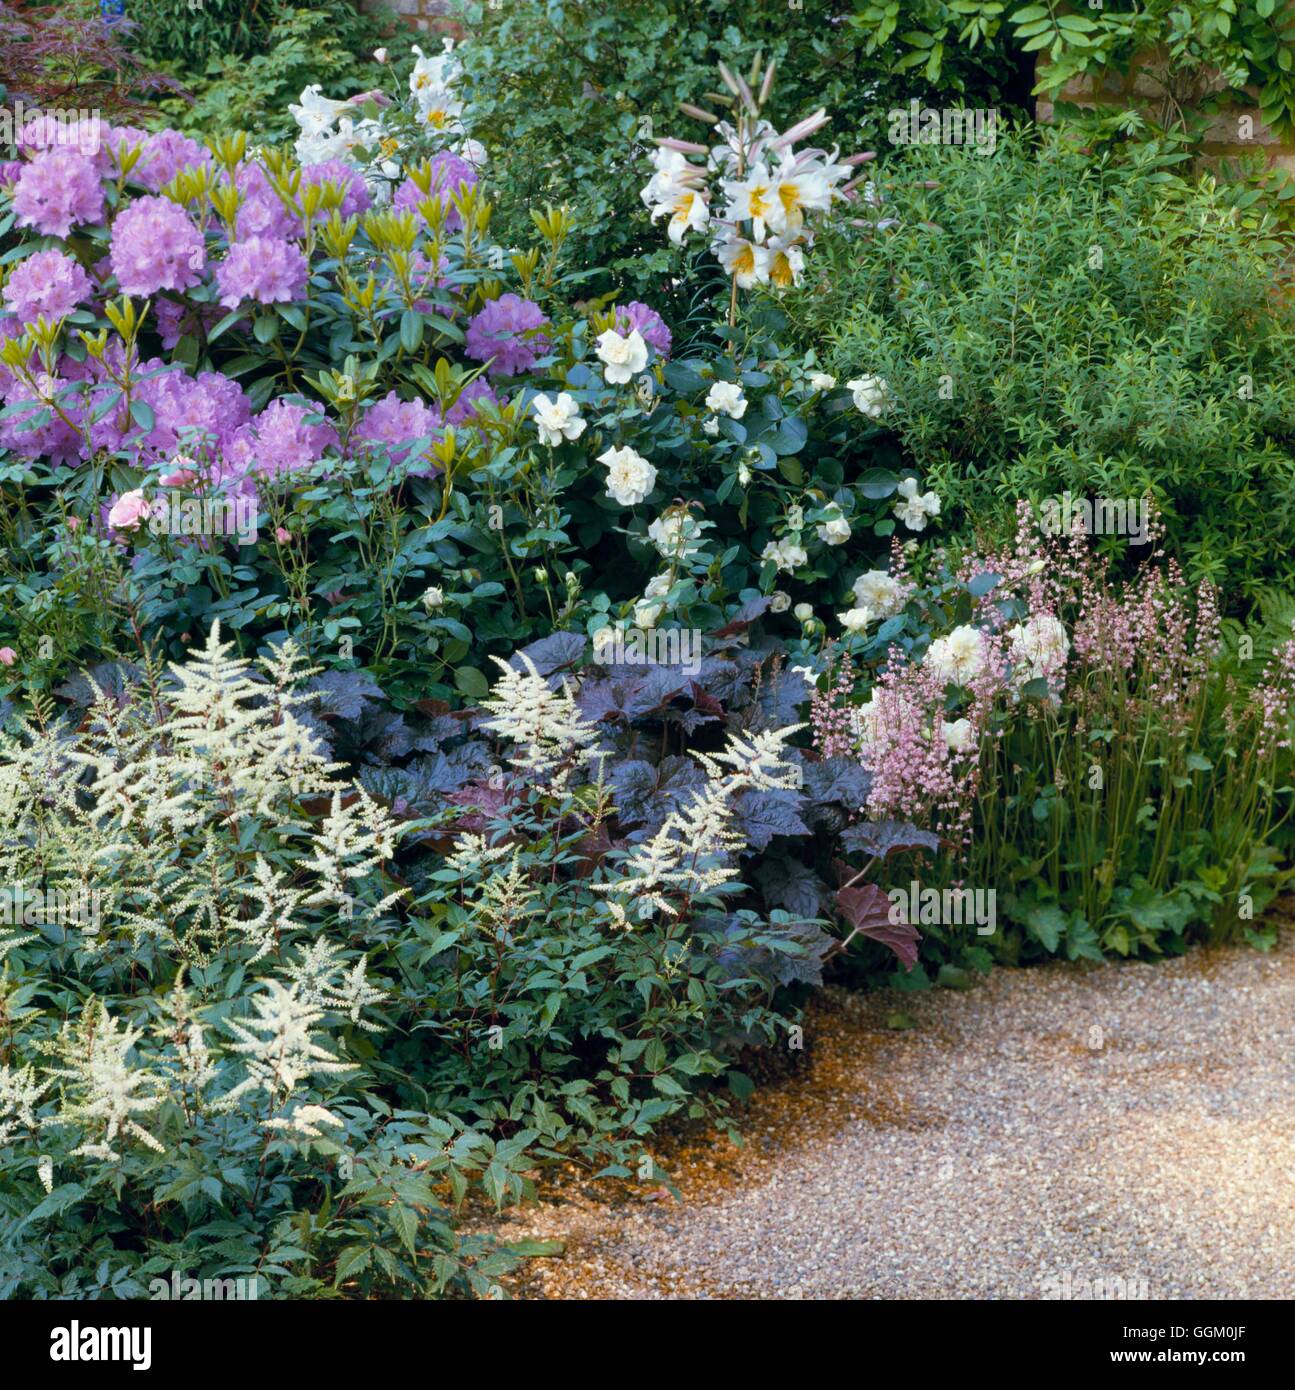 Eine Grenze in Farbe - lila - bepflanzt mit Rhododendron Rosen Heucheras und Astilbes OCB021327 Stockfoto